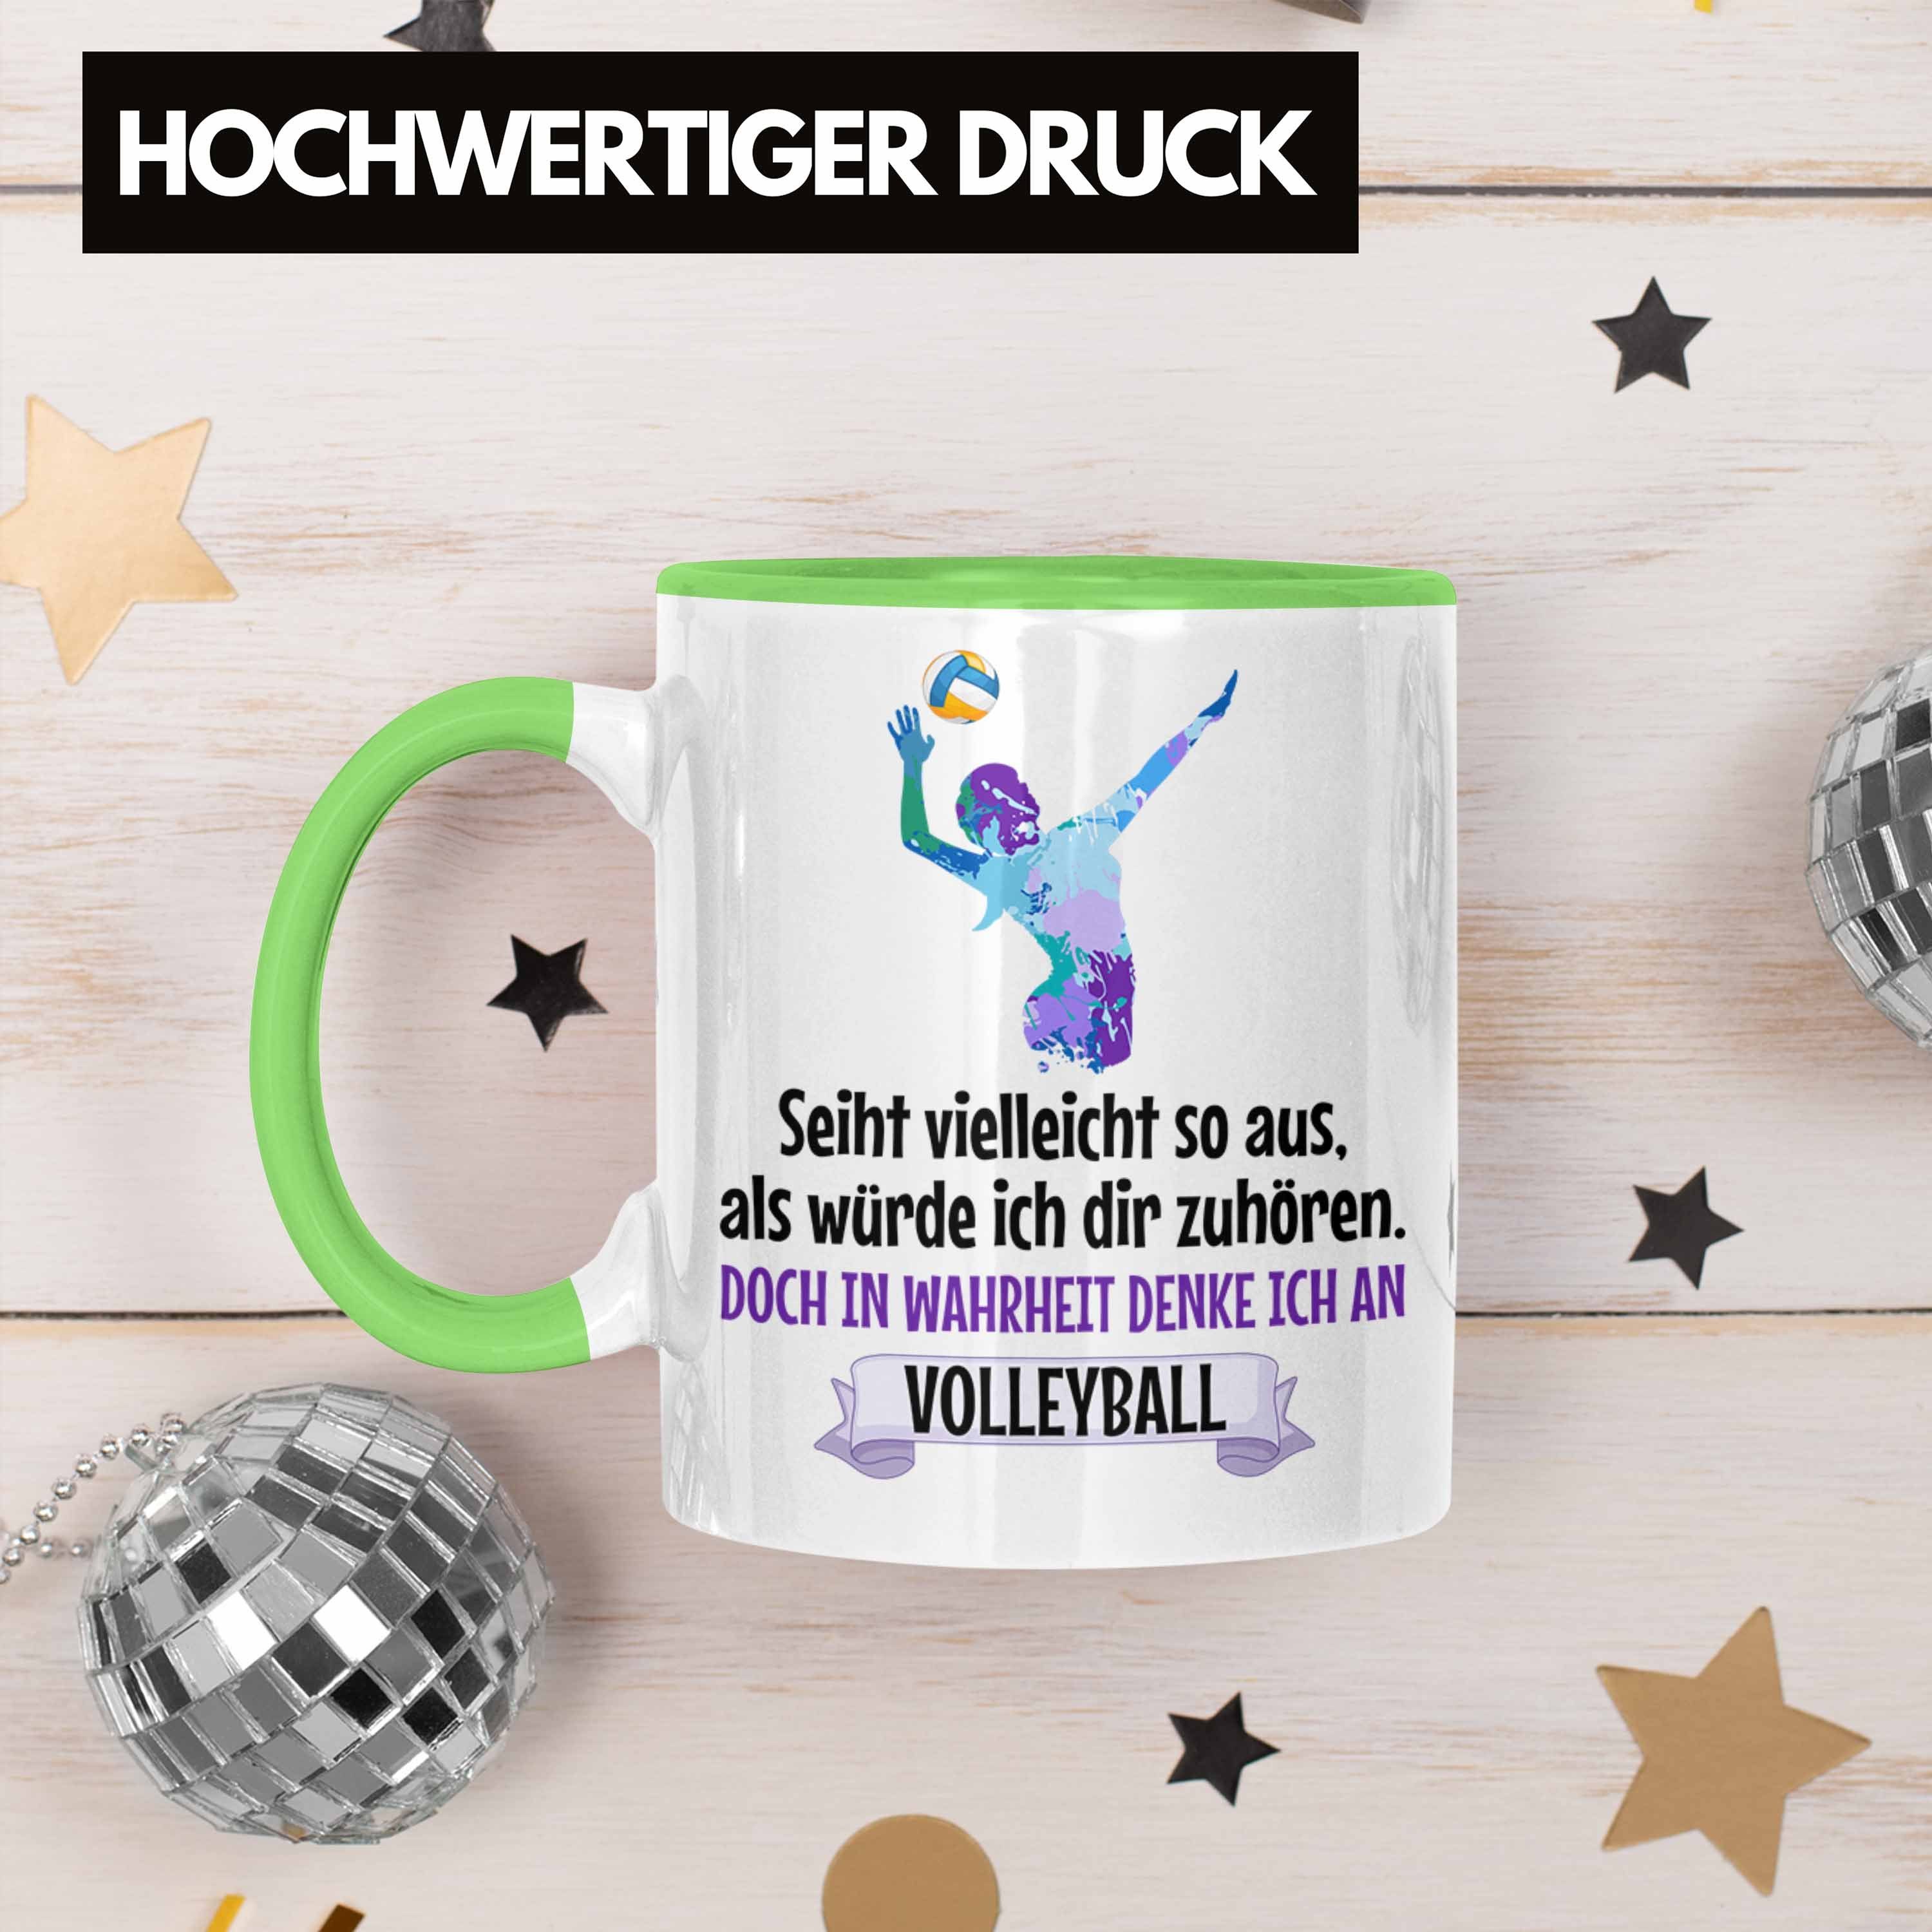 Kaffee Volleyball Herren Spielerin Tasse Trendation - Zubehör Volleyball-Spieler Geschenk Coach Grün Mädchen Tasse Trendation